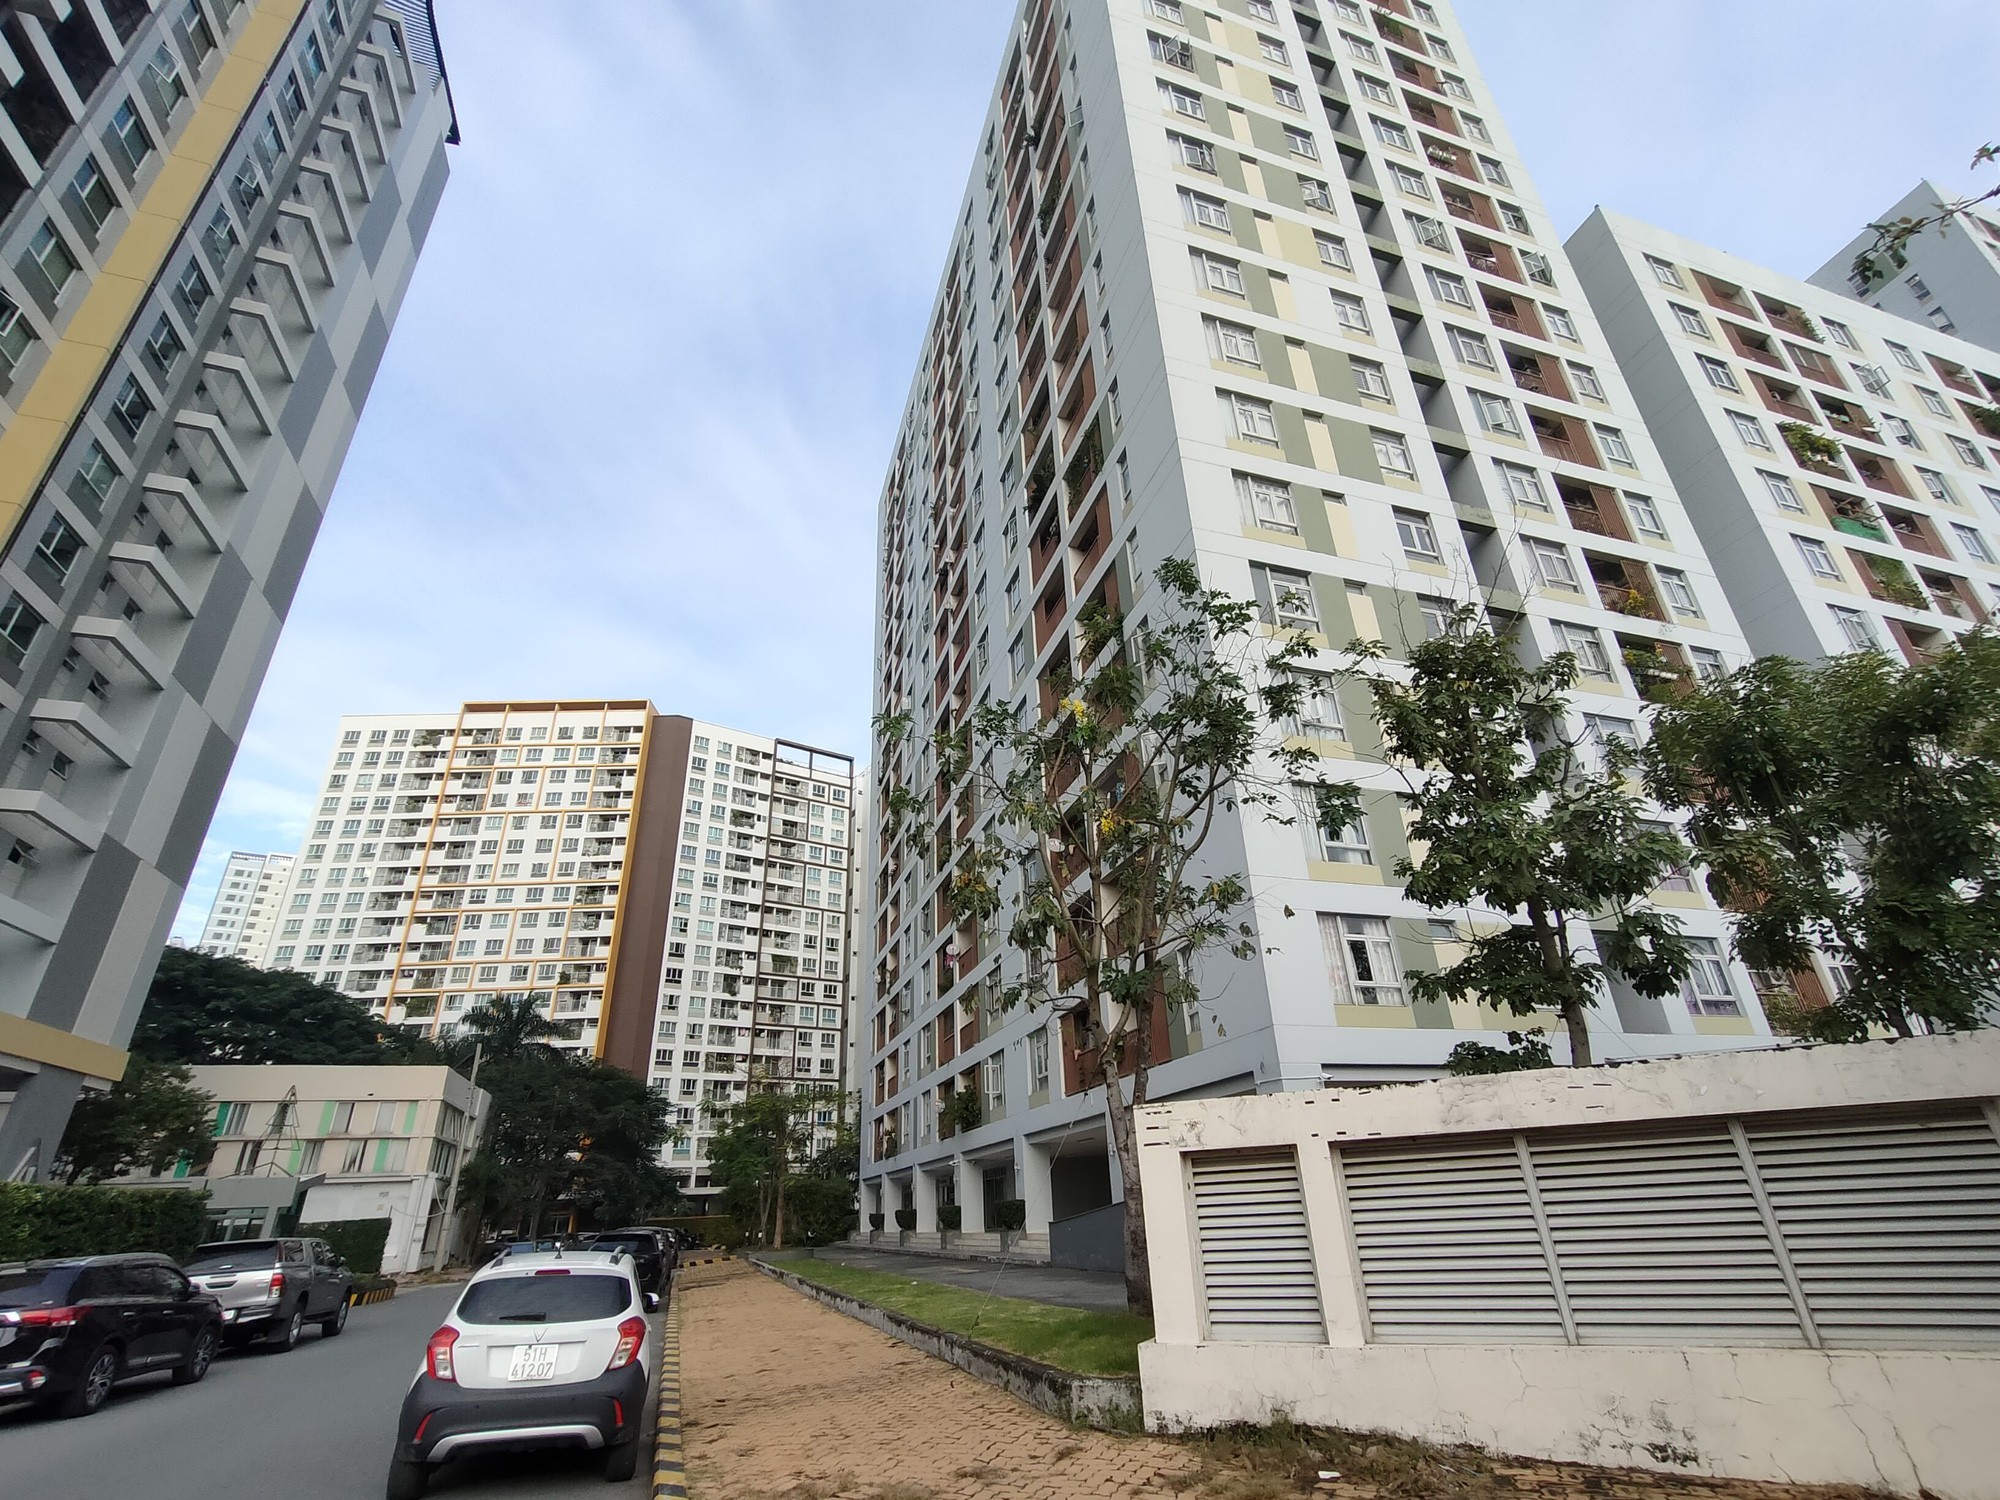 
Những căn hộ giá rẻ, dưới 30 triệu đồng/m2 đang dần biến mất ở TP. Hồ Chí Minh.
